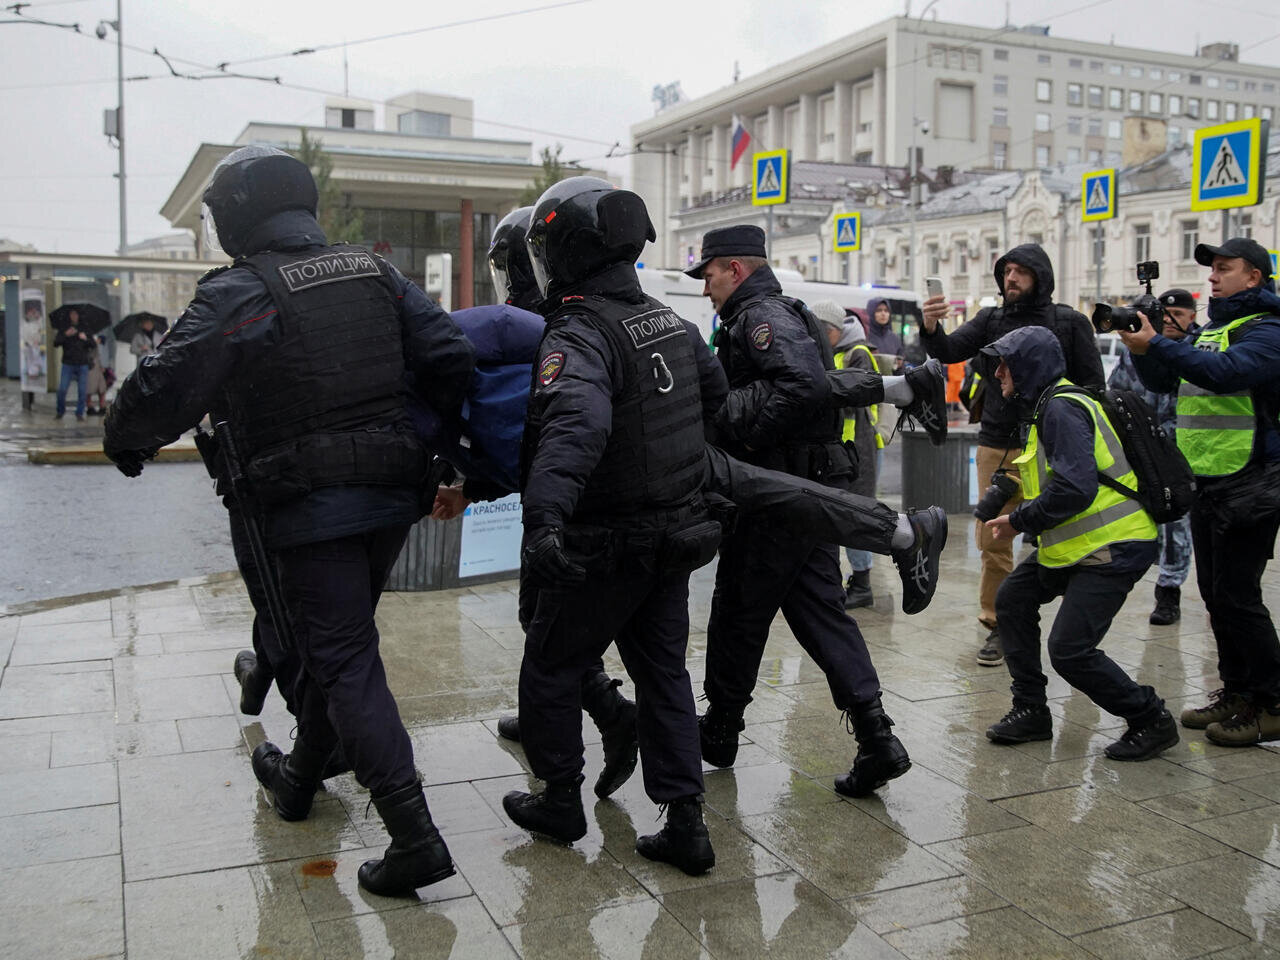 استانبول، مقصد فرار روس ها از سربازی اجباری / بازداشت 700 معترض در روسیه